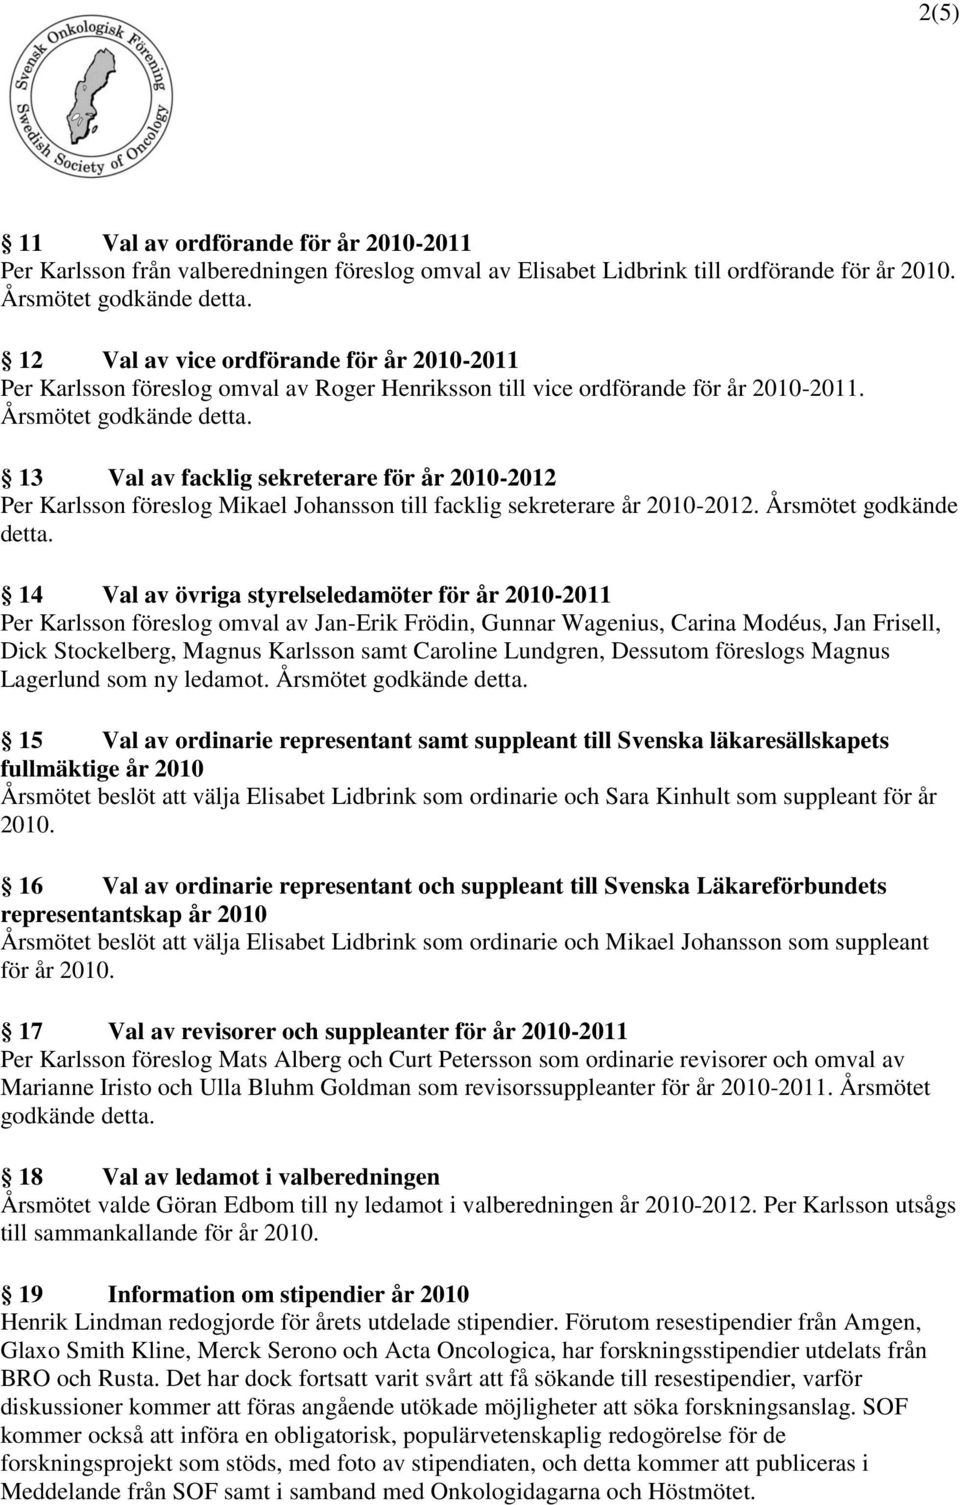 13 Val av facklig sekreterare för år 2010-2012 Per Karlsson föreslog Mikael Johansson till facklig sekreterare år 2010-2012. Årsmötet godkände detta.